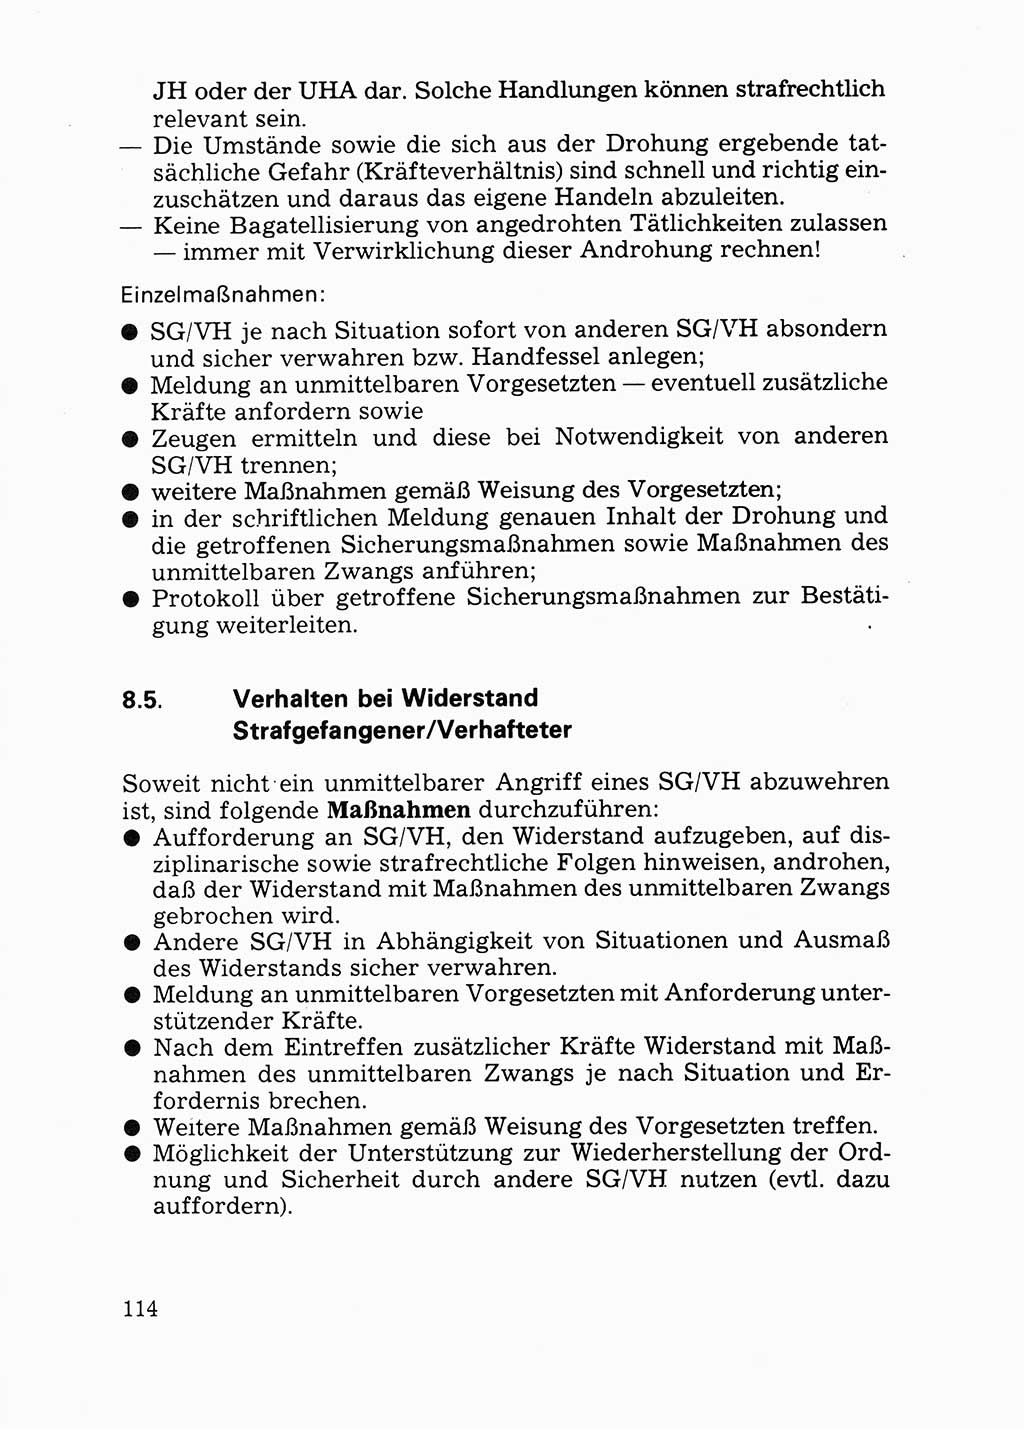 Handbuch für operative Dienste, Abteilung Strafvollzug (SV) [Ministerium des Innern (MdI) Deutsche Demokratische Republik (DDR)] 1981, Seite 114 (Hb. op. D. Abt. SV MdI DDR 1981, S. 114)